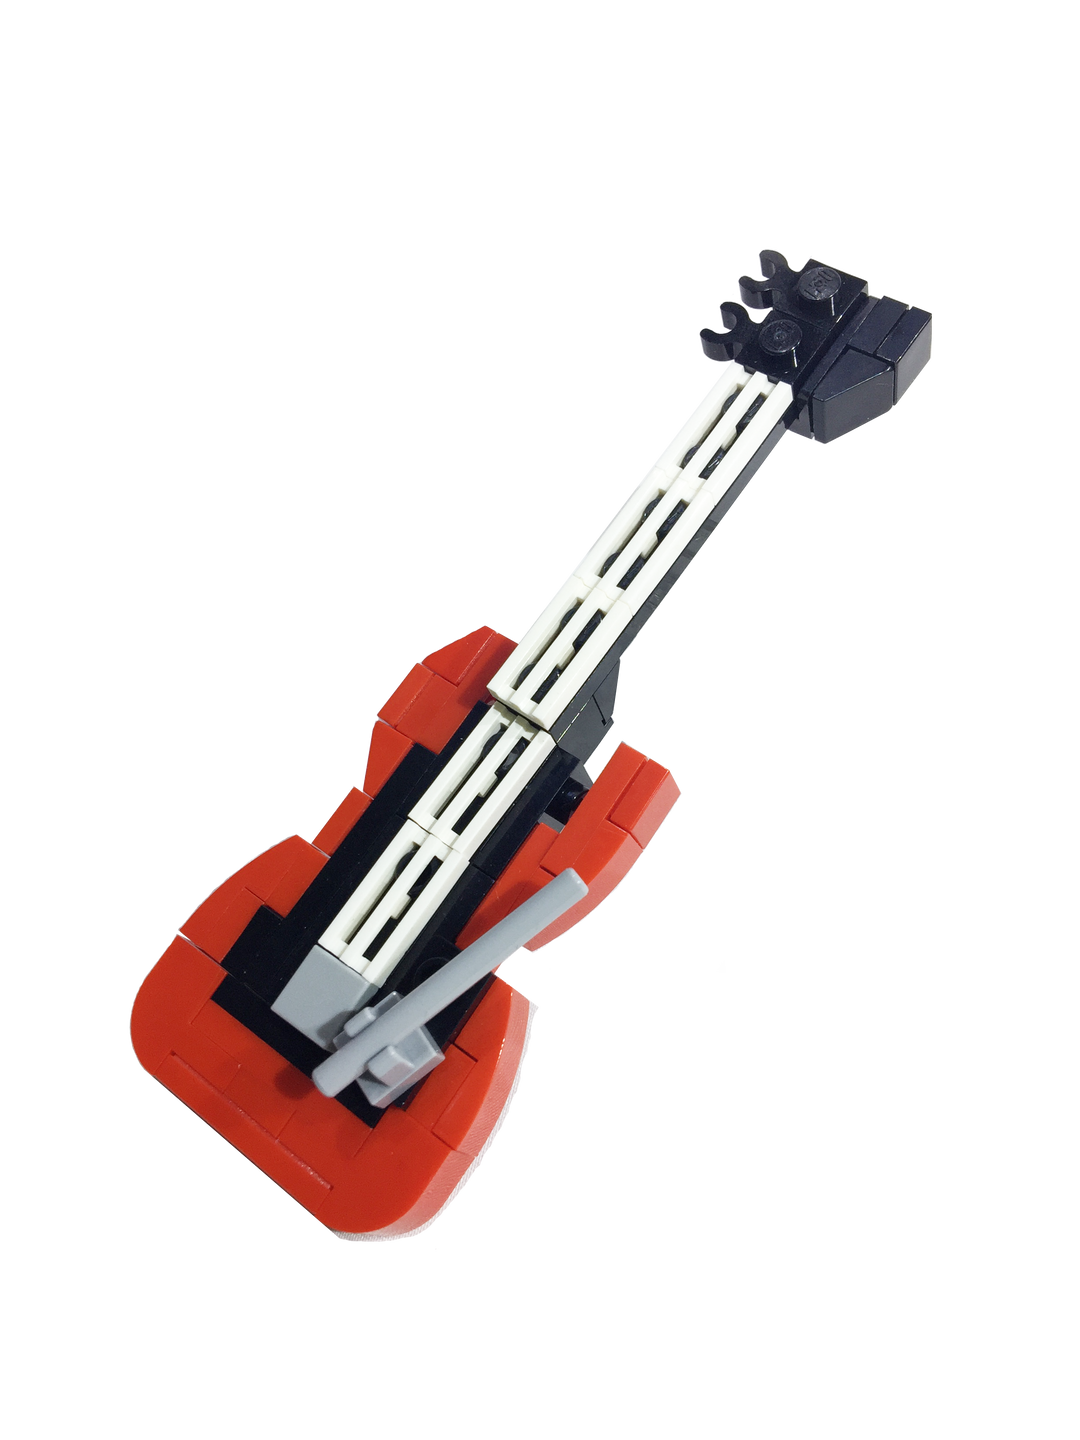 Exclusive Brick Loot Build Rock N’ Roll Electric Guitar by Joe Meno – 100%  LEGO Bricks